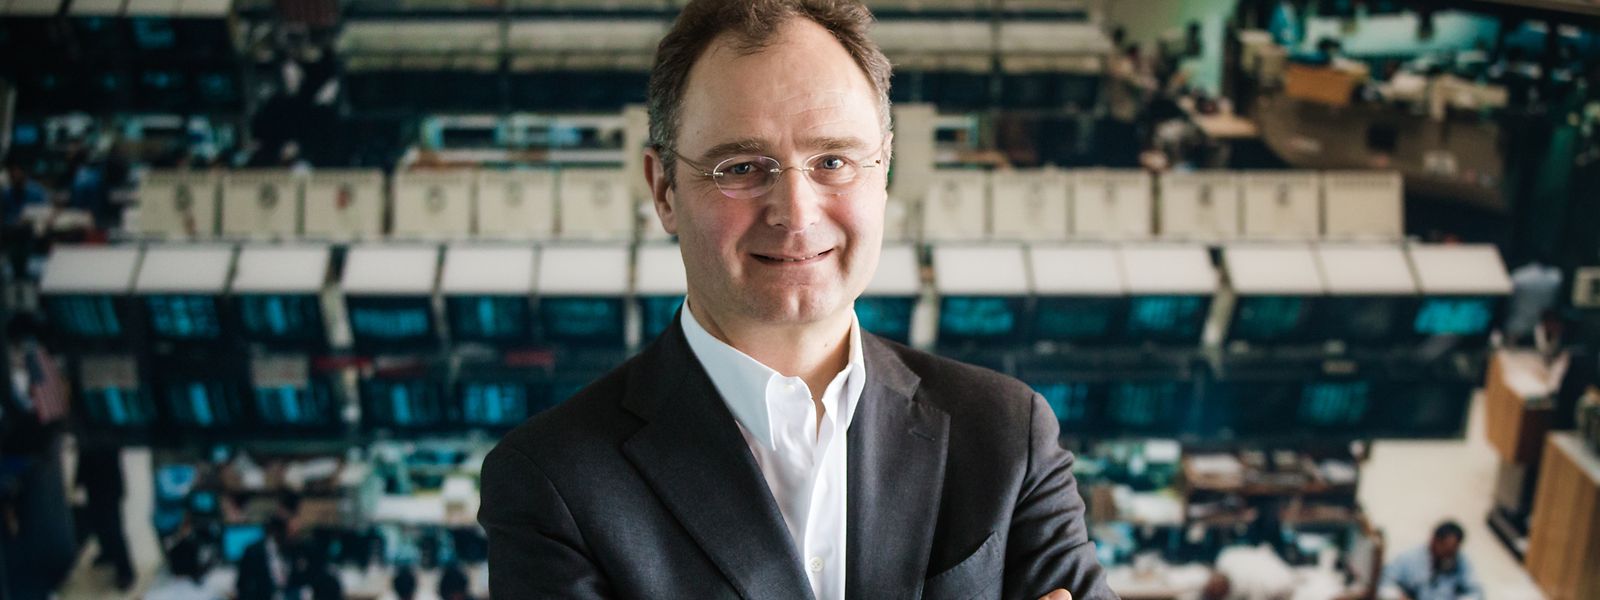 Der gelernte Investmentbanker Stephan Leithner ist im Vorstand der Deutschen Börse für das Daten- und Indexgeschäft sowie die Abwicklungs- und Verwahrtochter Clearstream zuständig.